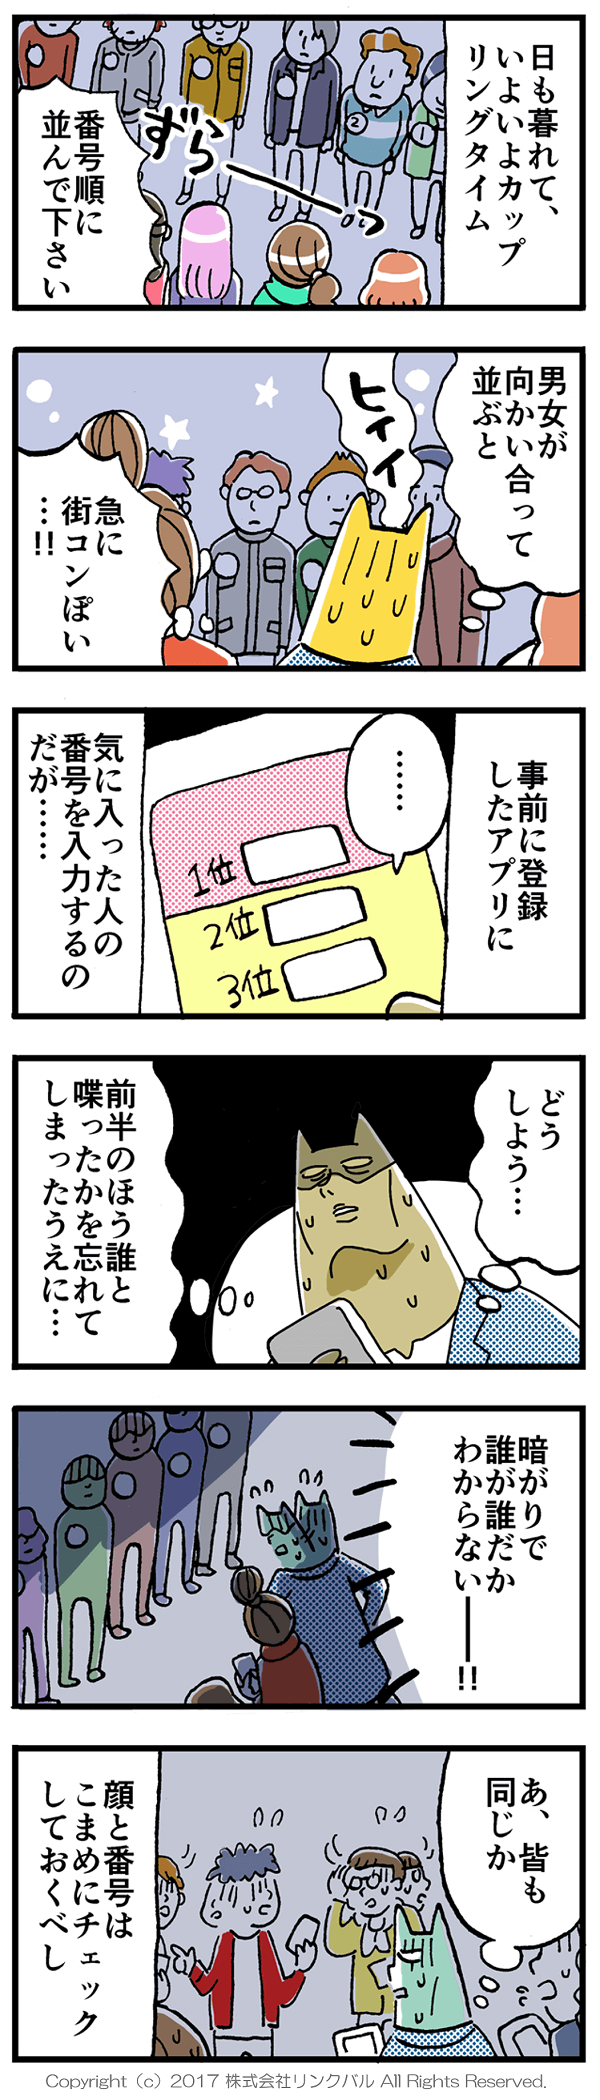 【婚活漫画】アラサー街コン物語・第18話「カップリングタイム」